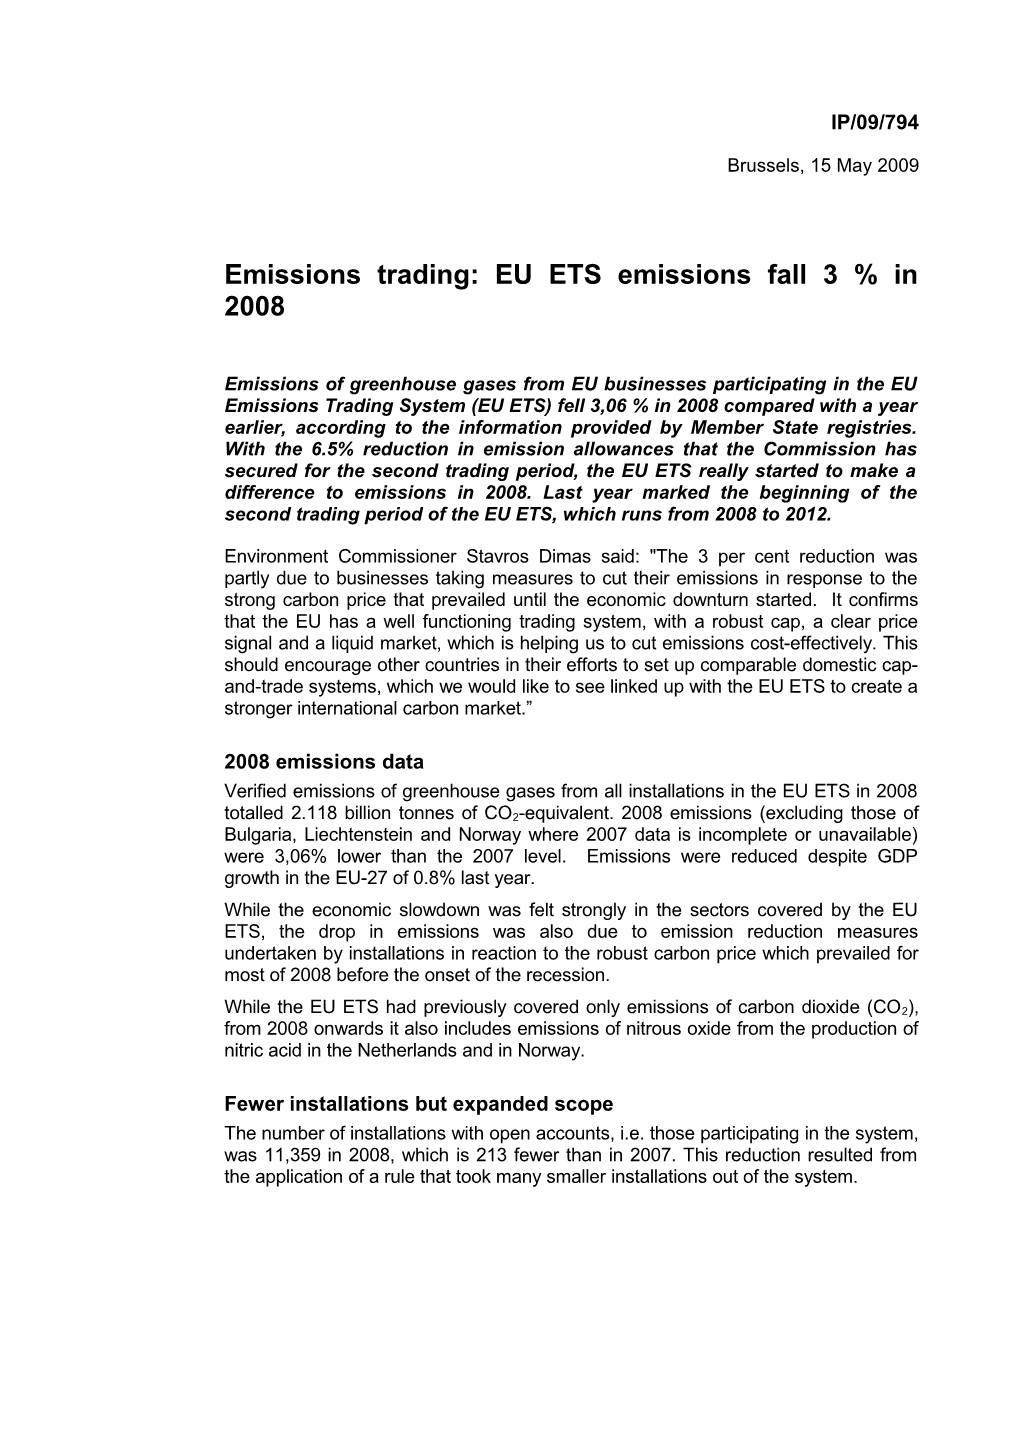 Emissions Trading: EU ETS Emissions Fall 3 % in 2008